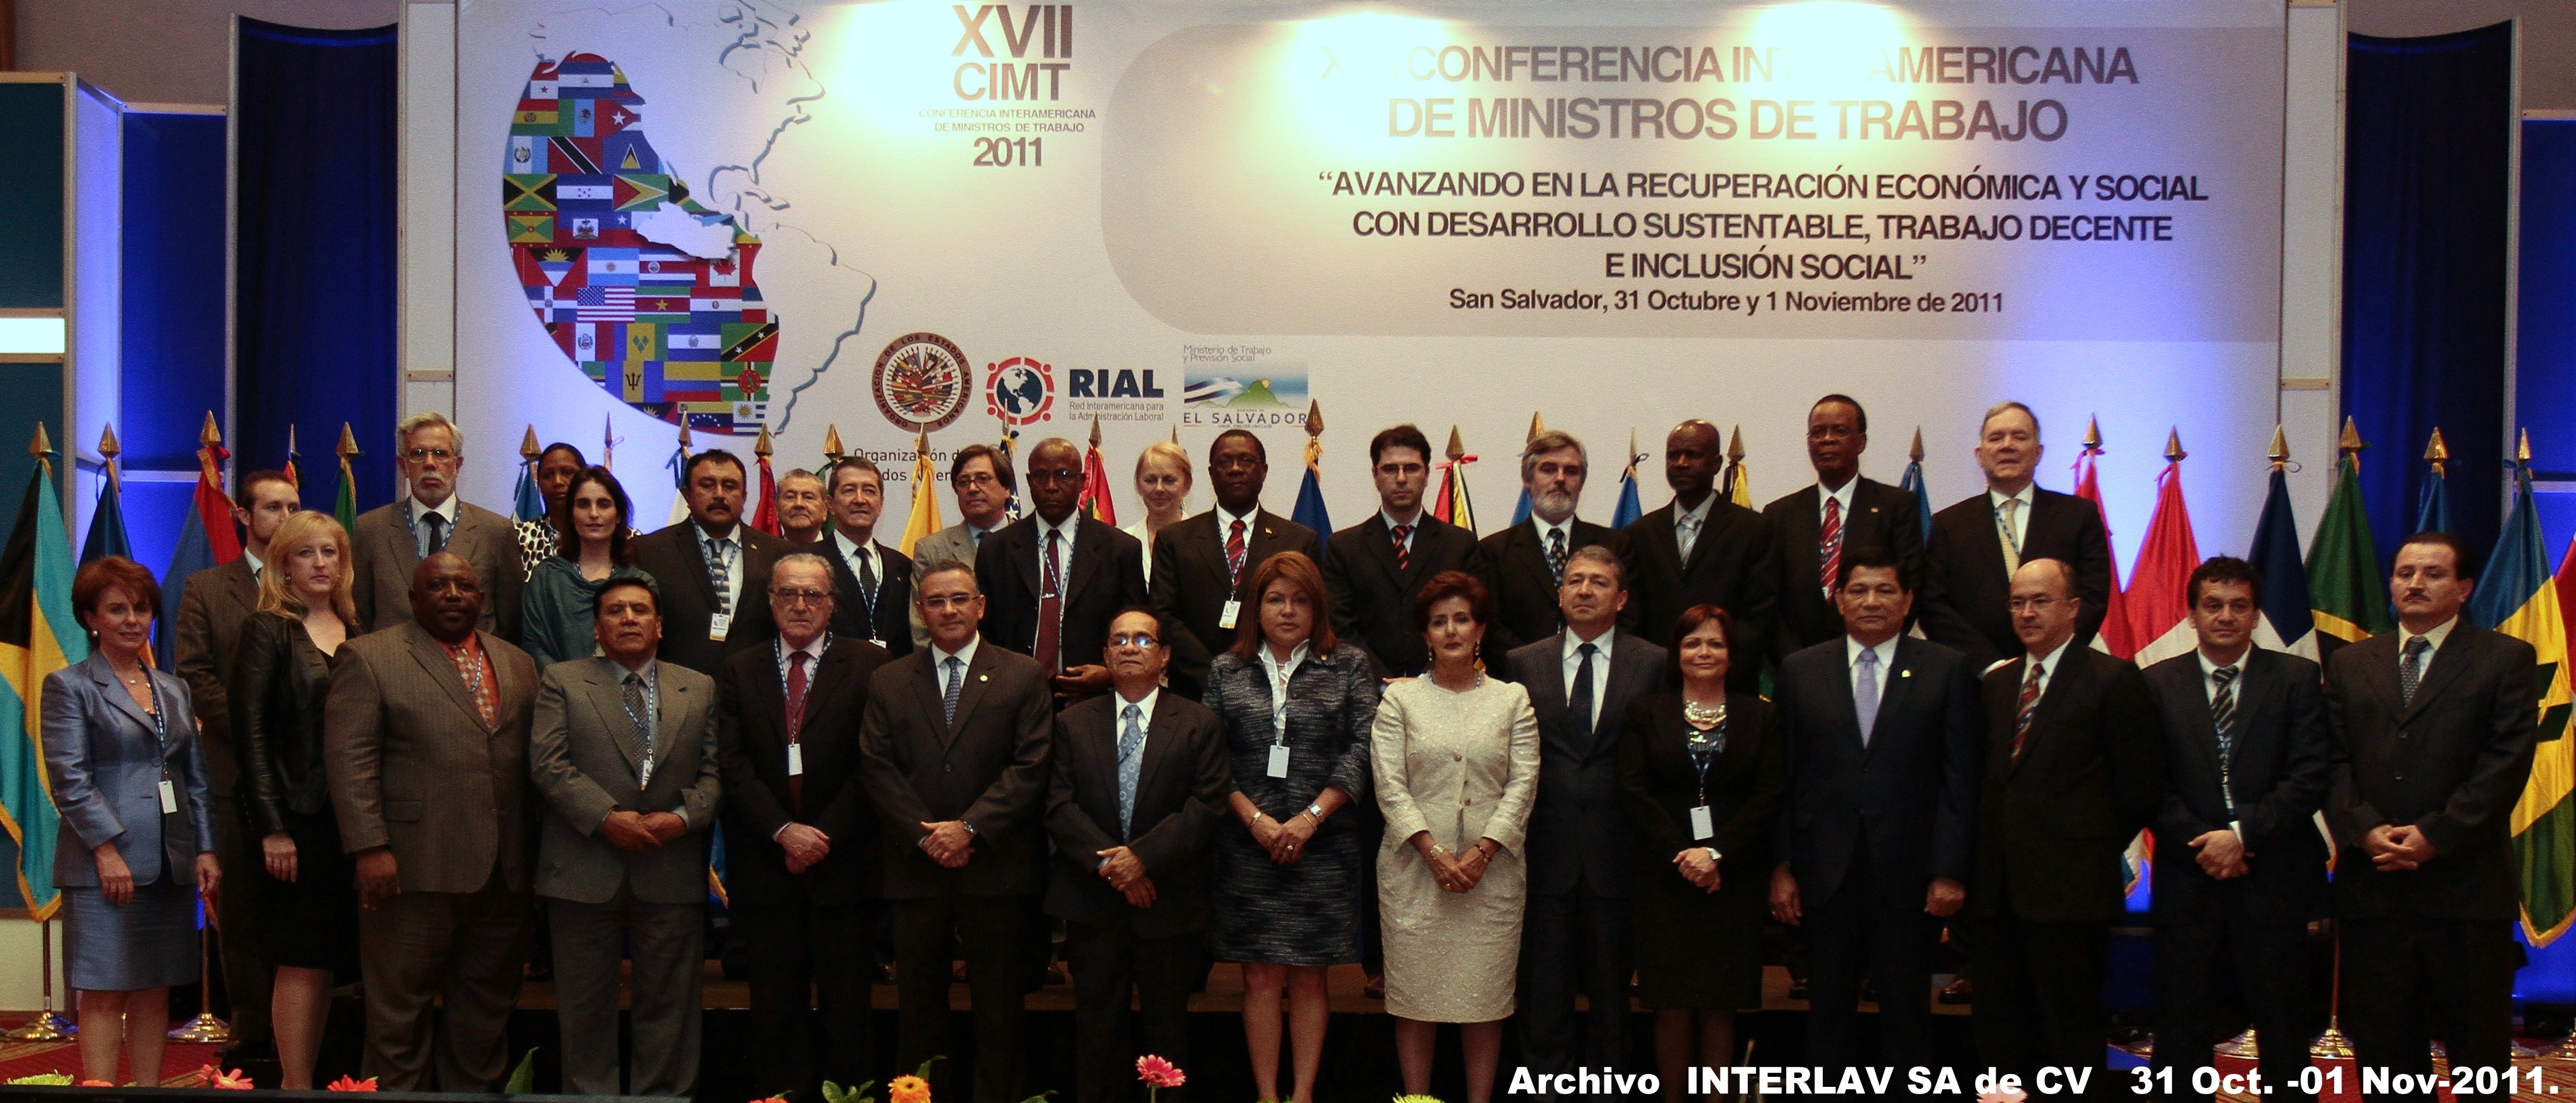 XVII Conferencia Interamericana de Ministros de Trabajo (CIMT) de la OEA